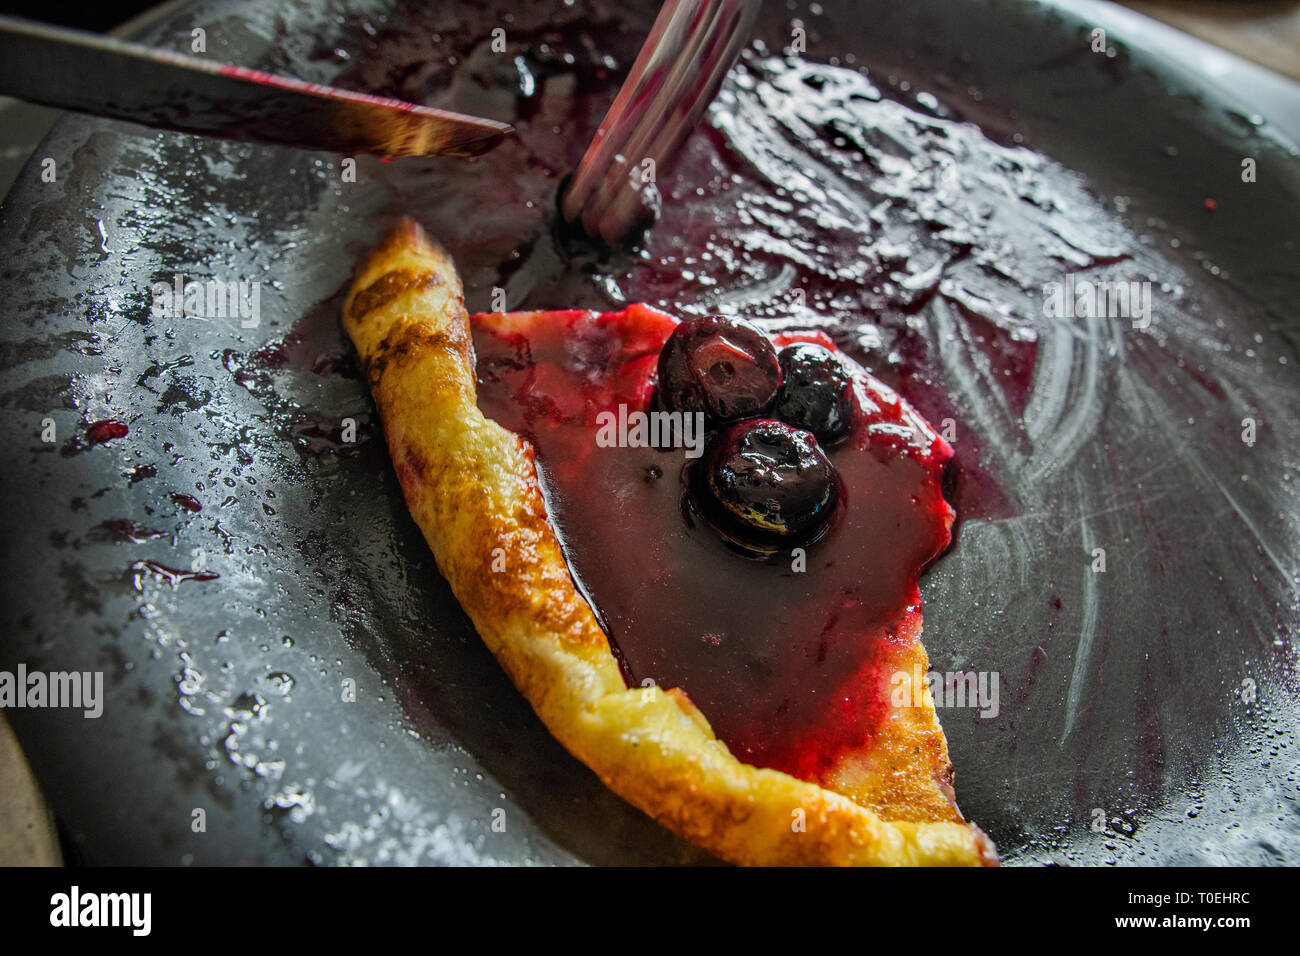 Mangiare un pancake con salsa di mirtilli Foto Stock